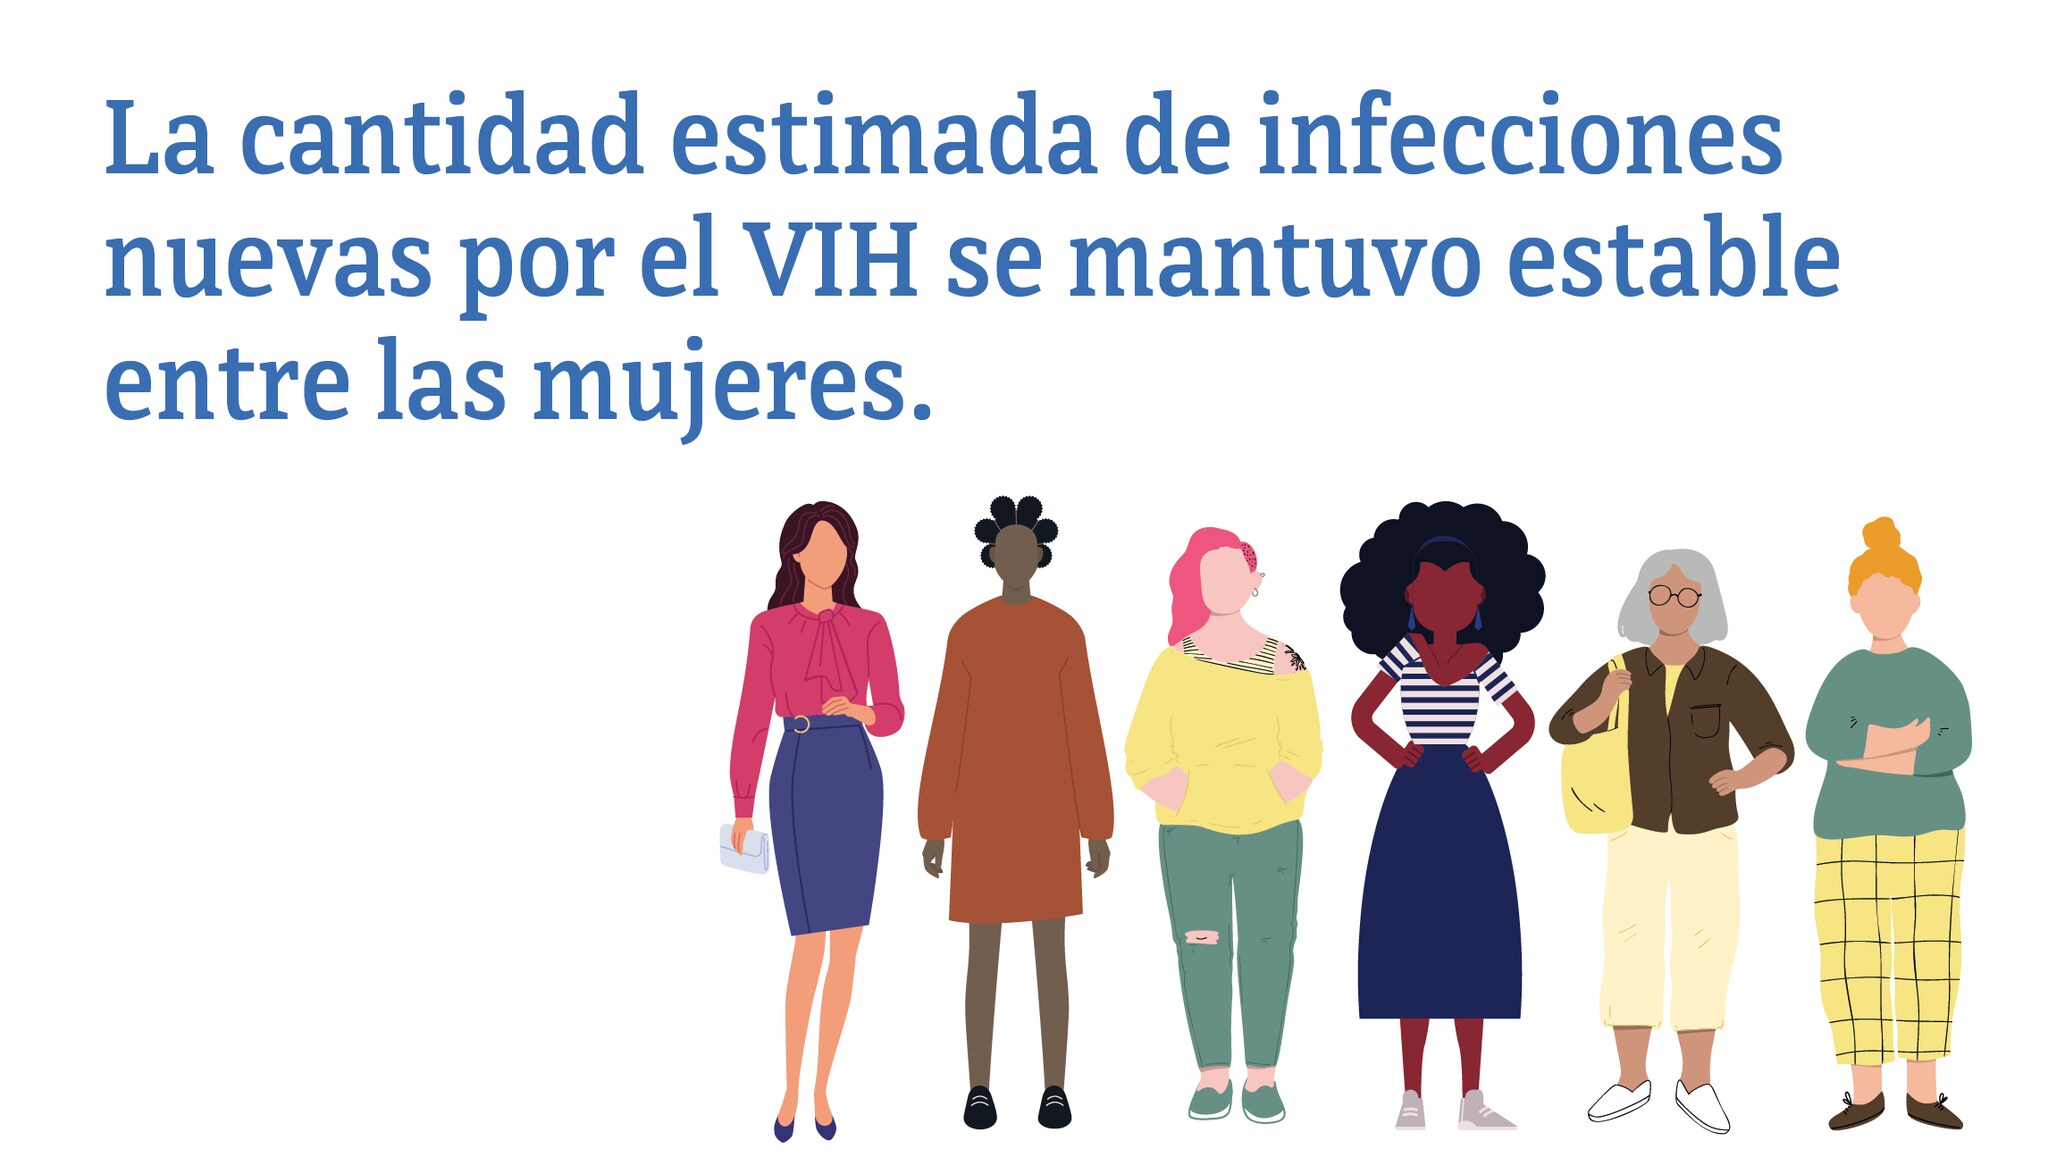 Esta imagen muestra que la cantidad estimada de infecciones nuevas por el VIH se mantuvo estable entre las mujeres.